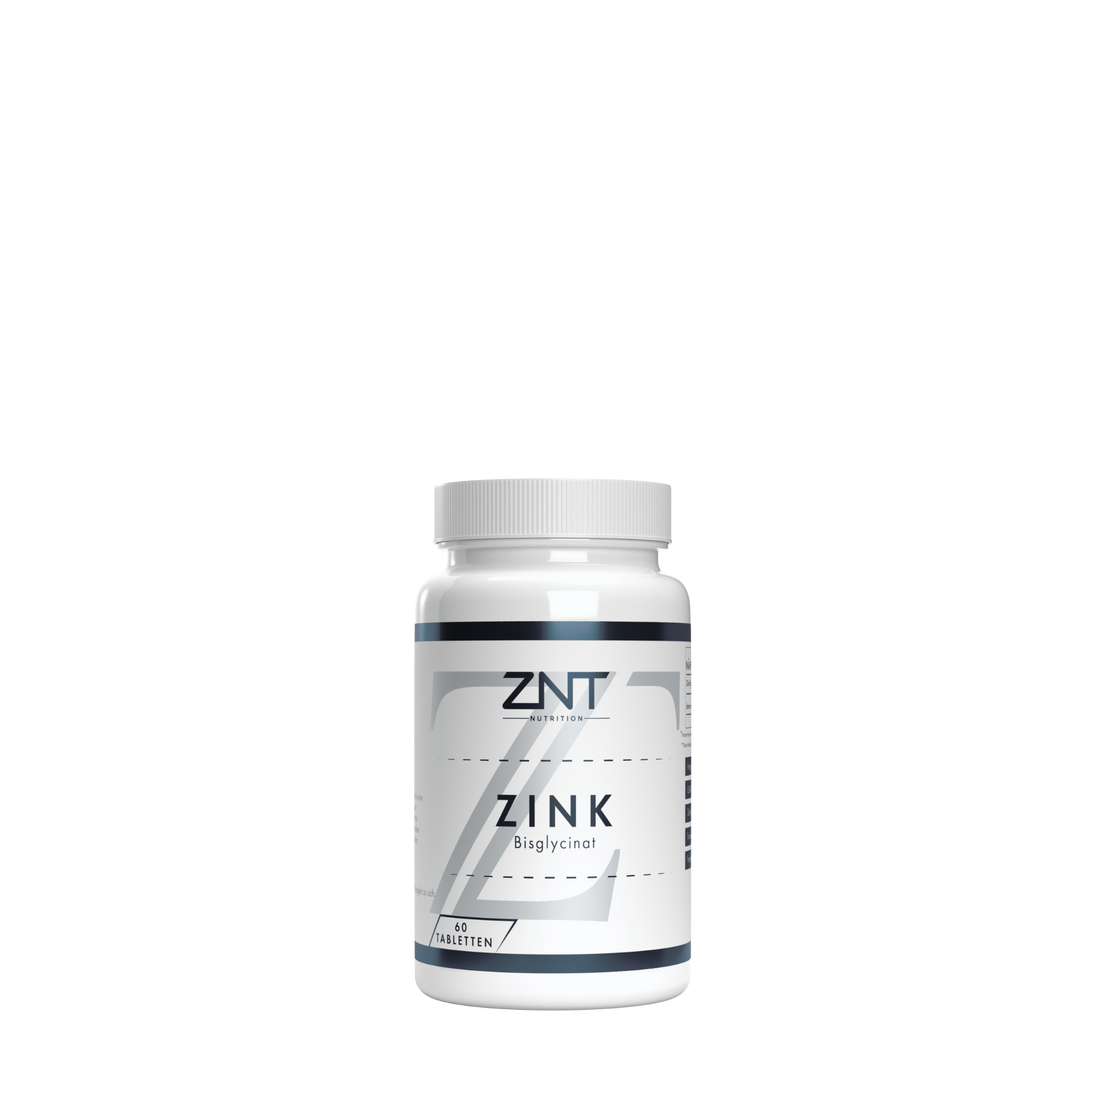 Zink Bisglycinat - ZNT Nutrition